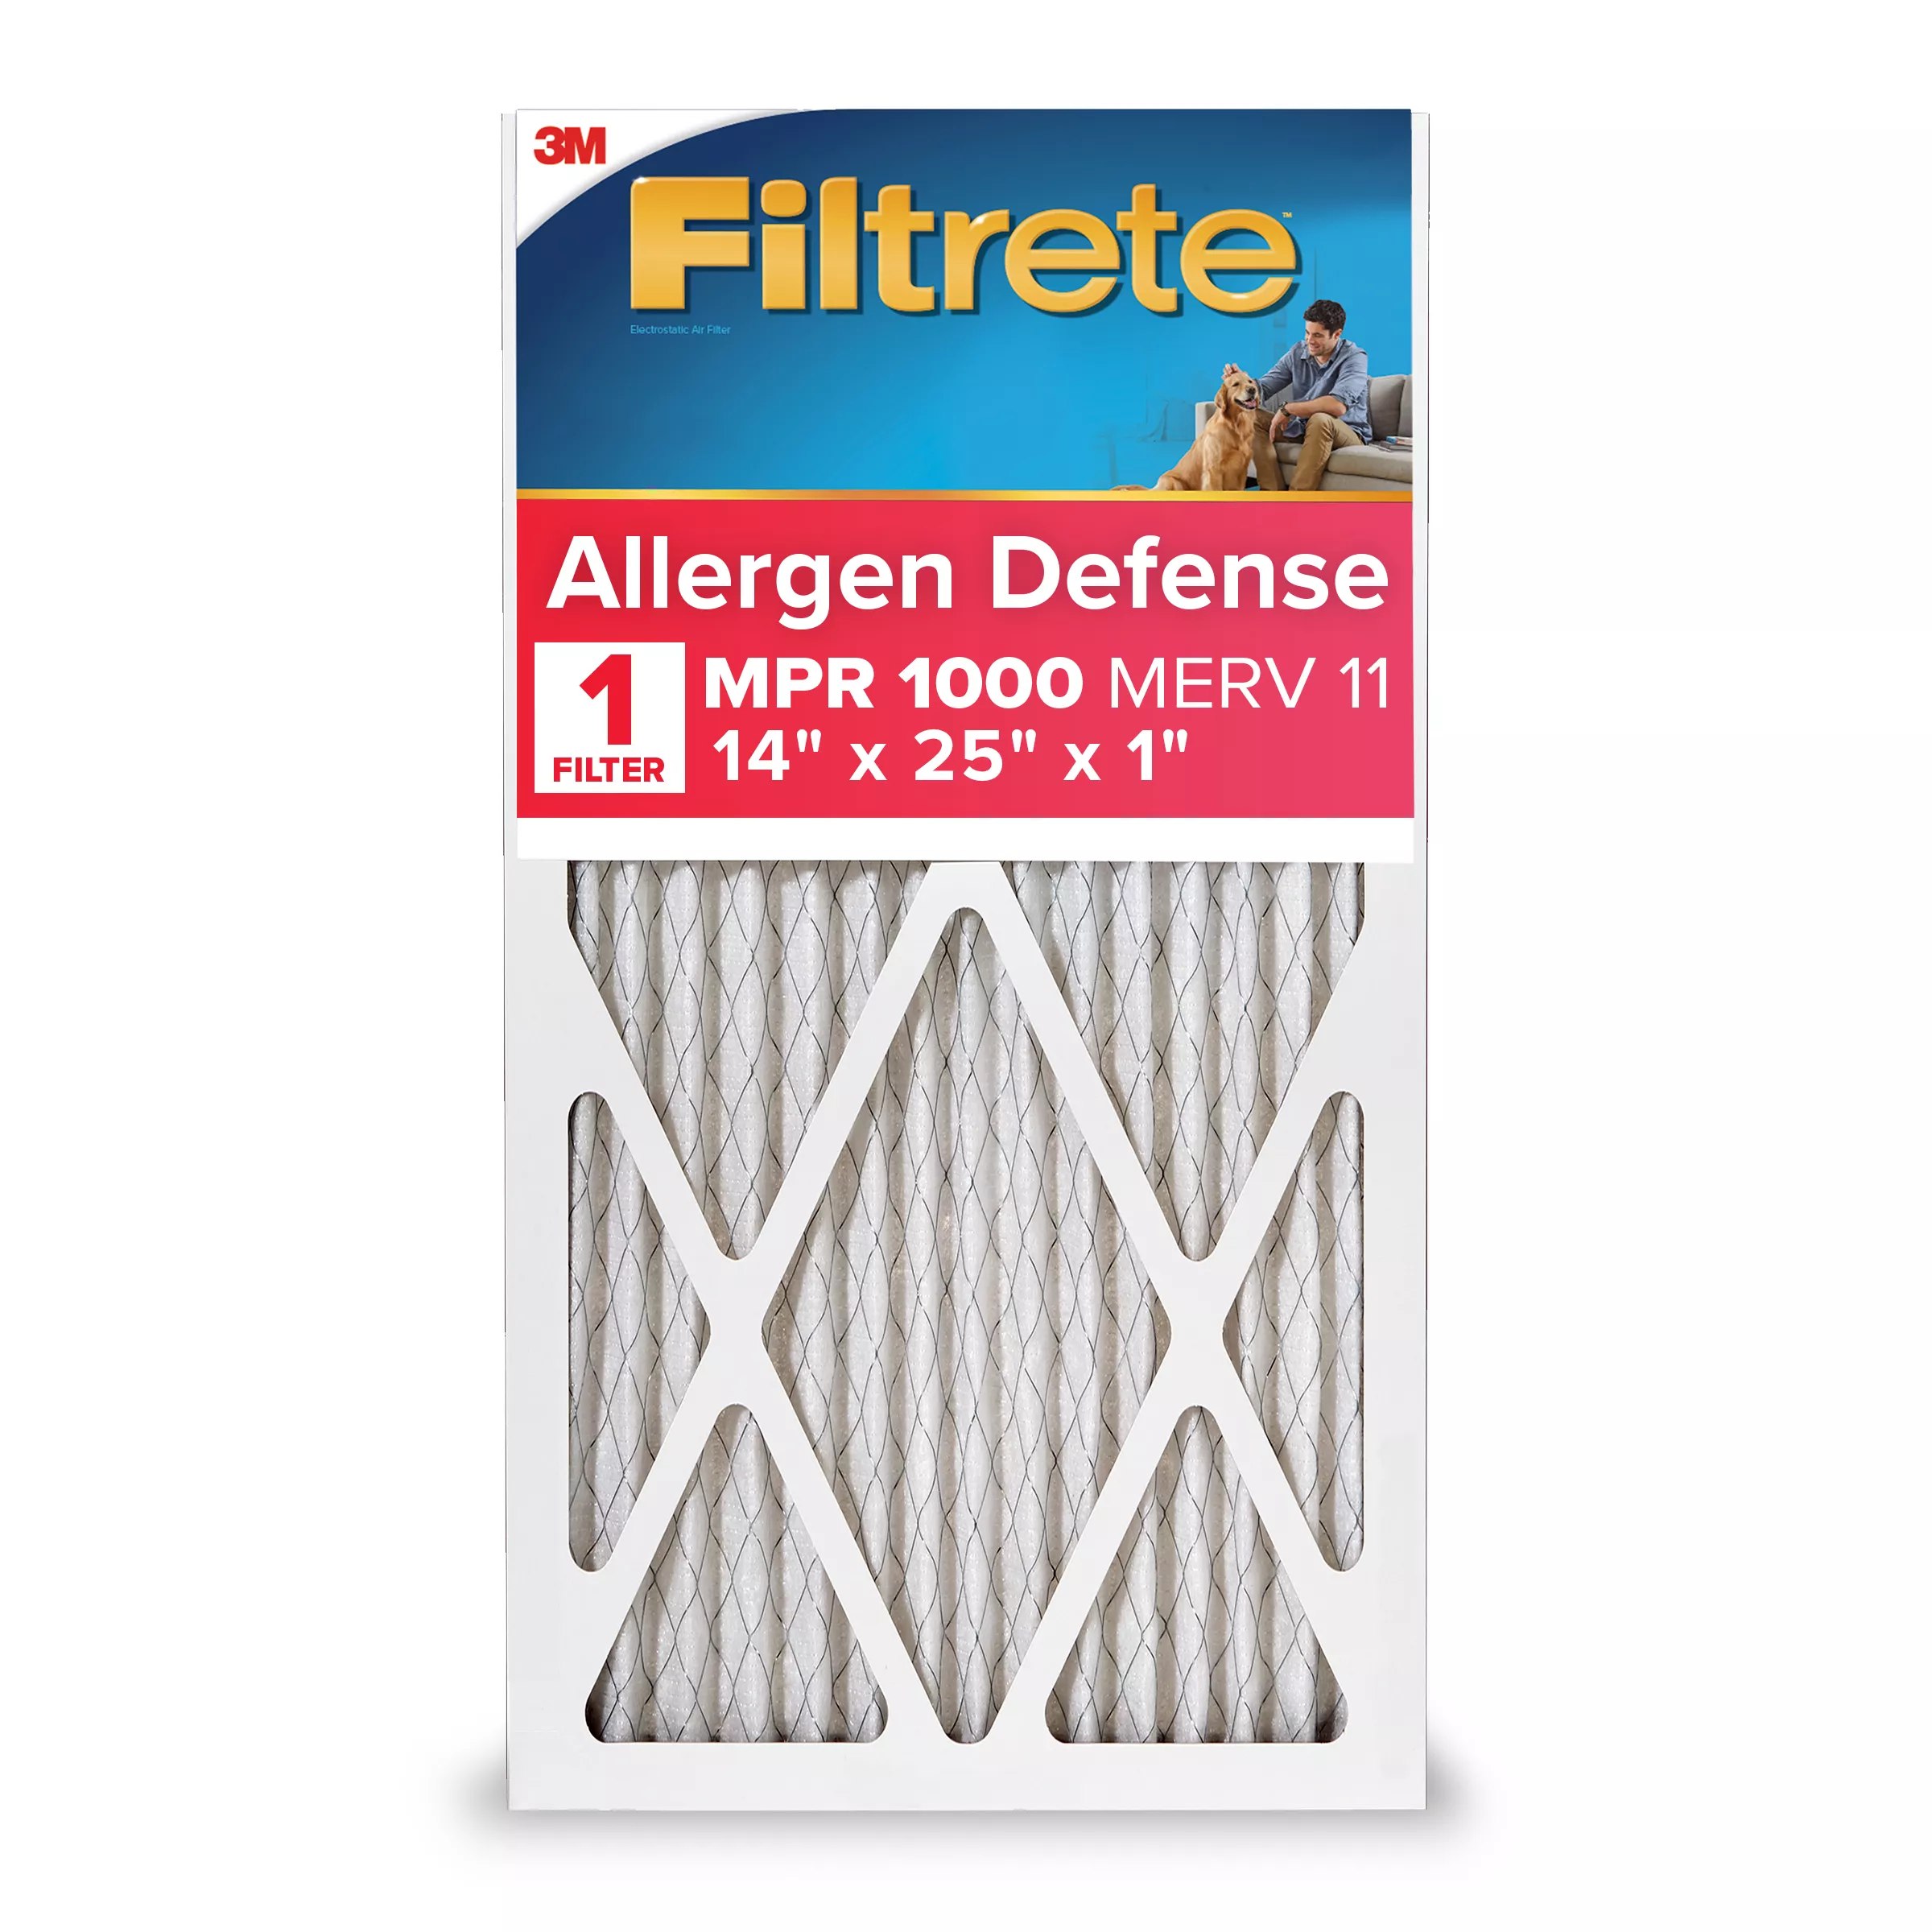 Filtrete™ Allergen Defense Air Filter, 1000 MPR, 9804-4, 14 in x 25 in x 1 in (35.5 cm x 63.5 cm x 2.5 cm)